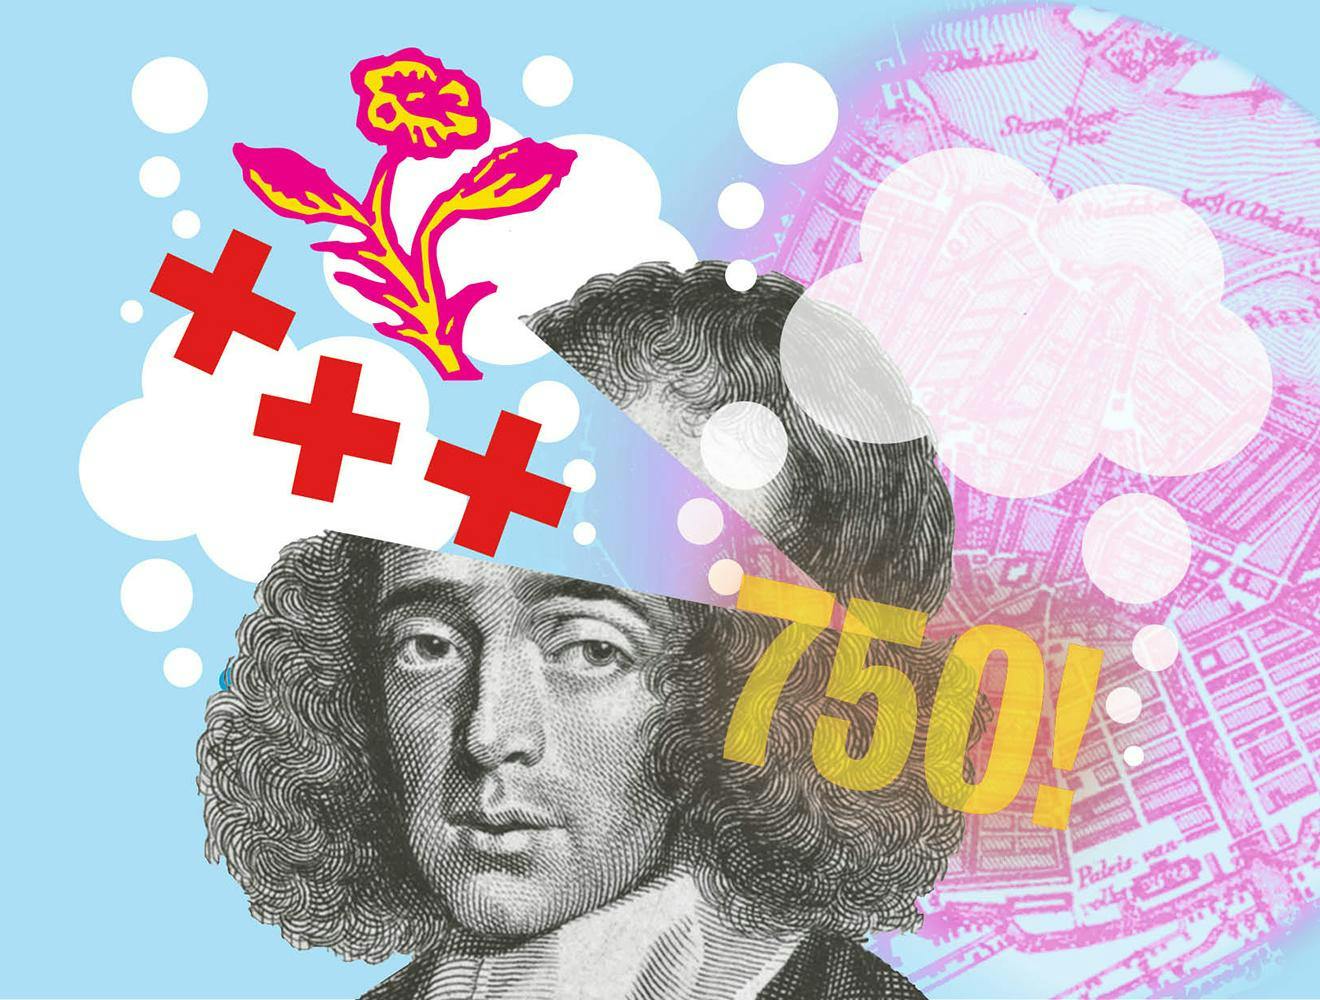 Amsterdam: Bevrijdend denken van Spinoza tot nu